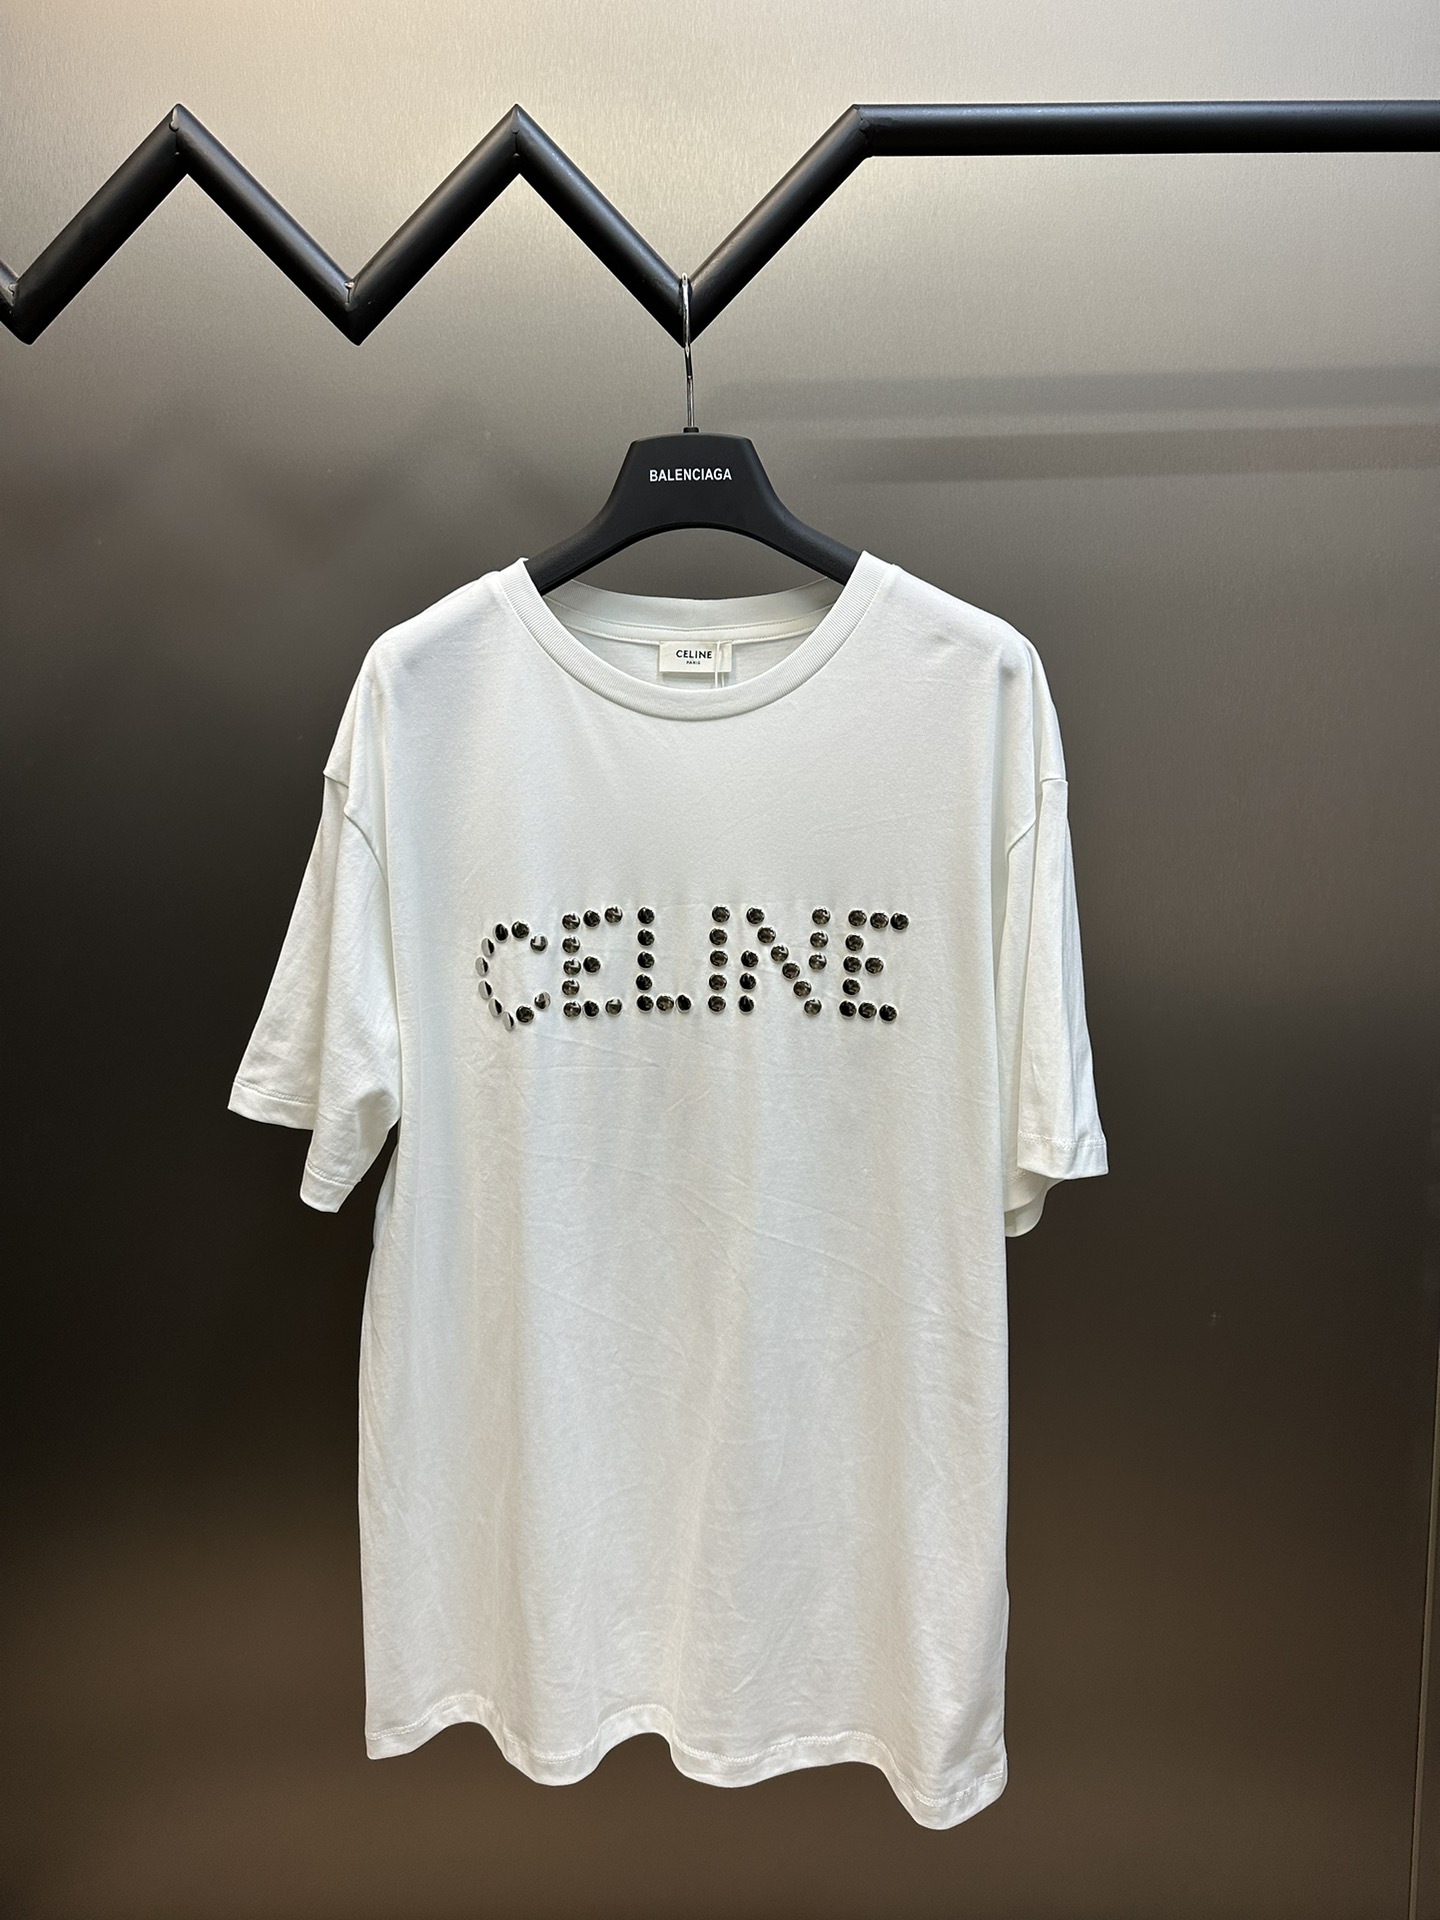 Celine Clothing T-Shirt Beige White Short Sleeve